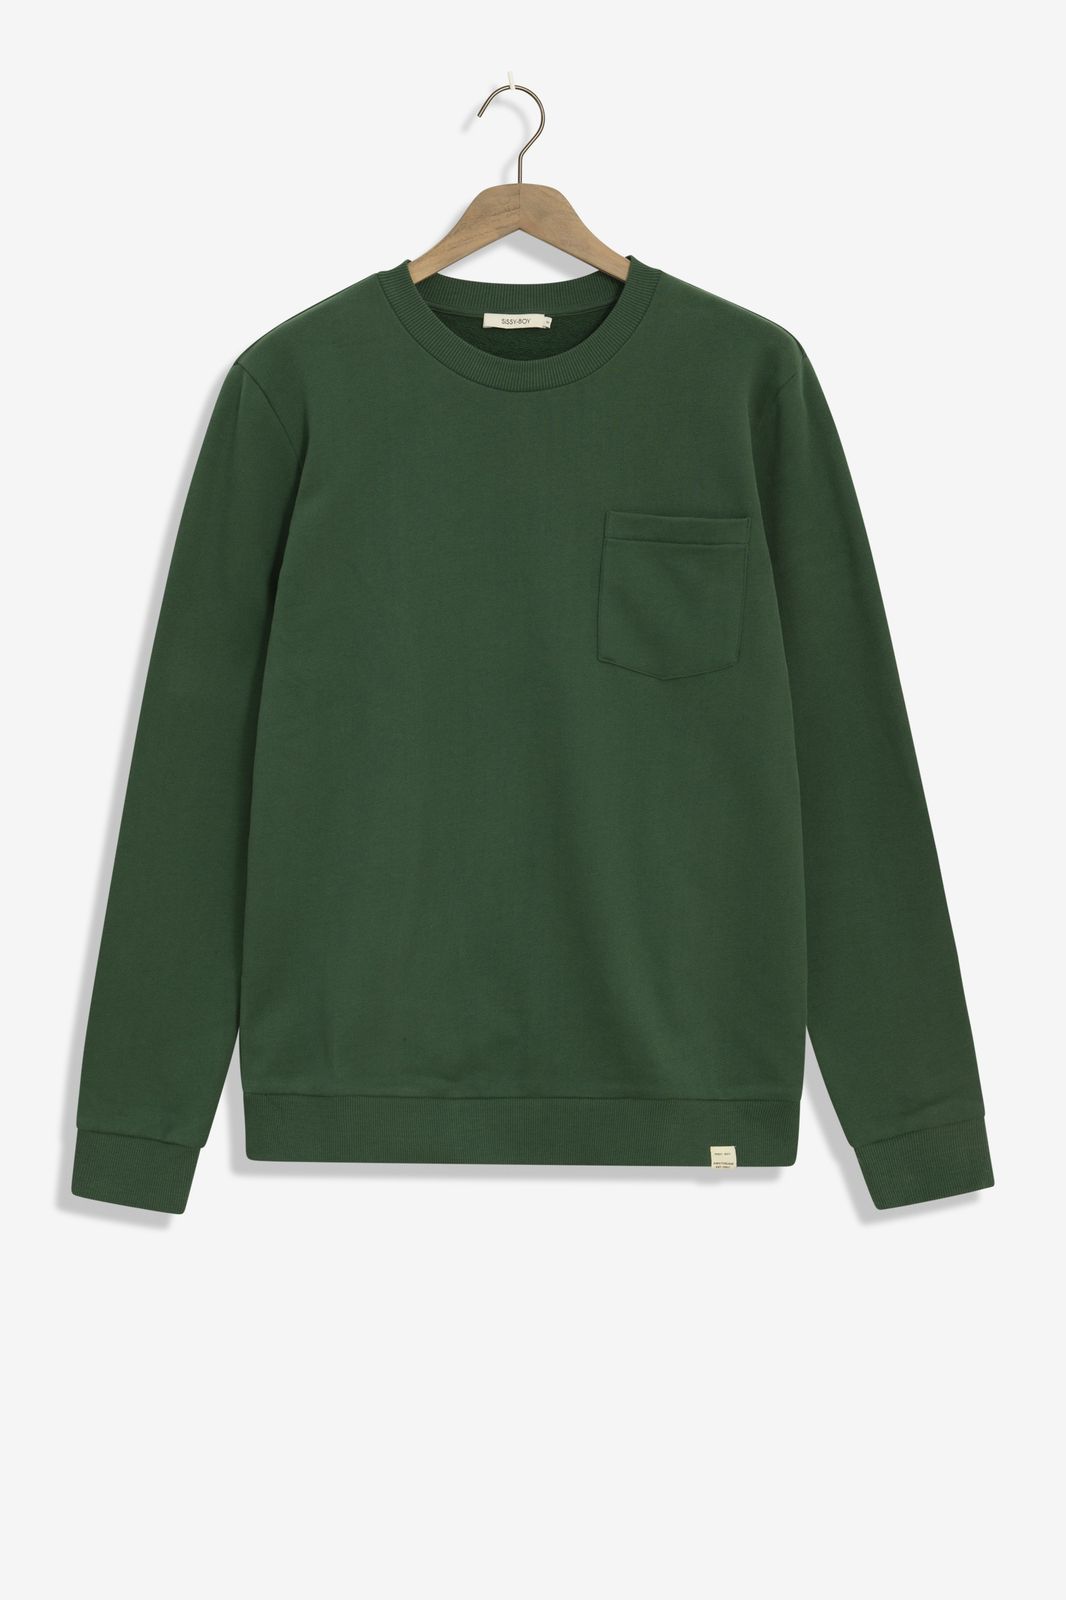 Sweater mit Brusttasche - dunkelgrün